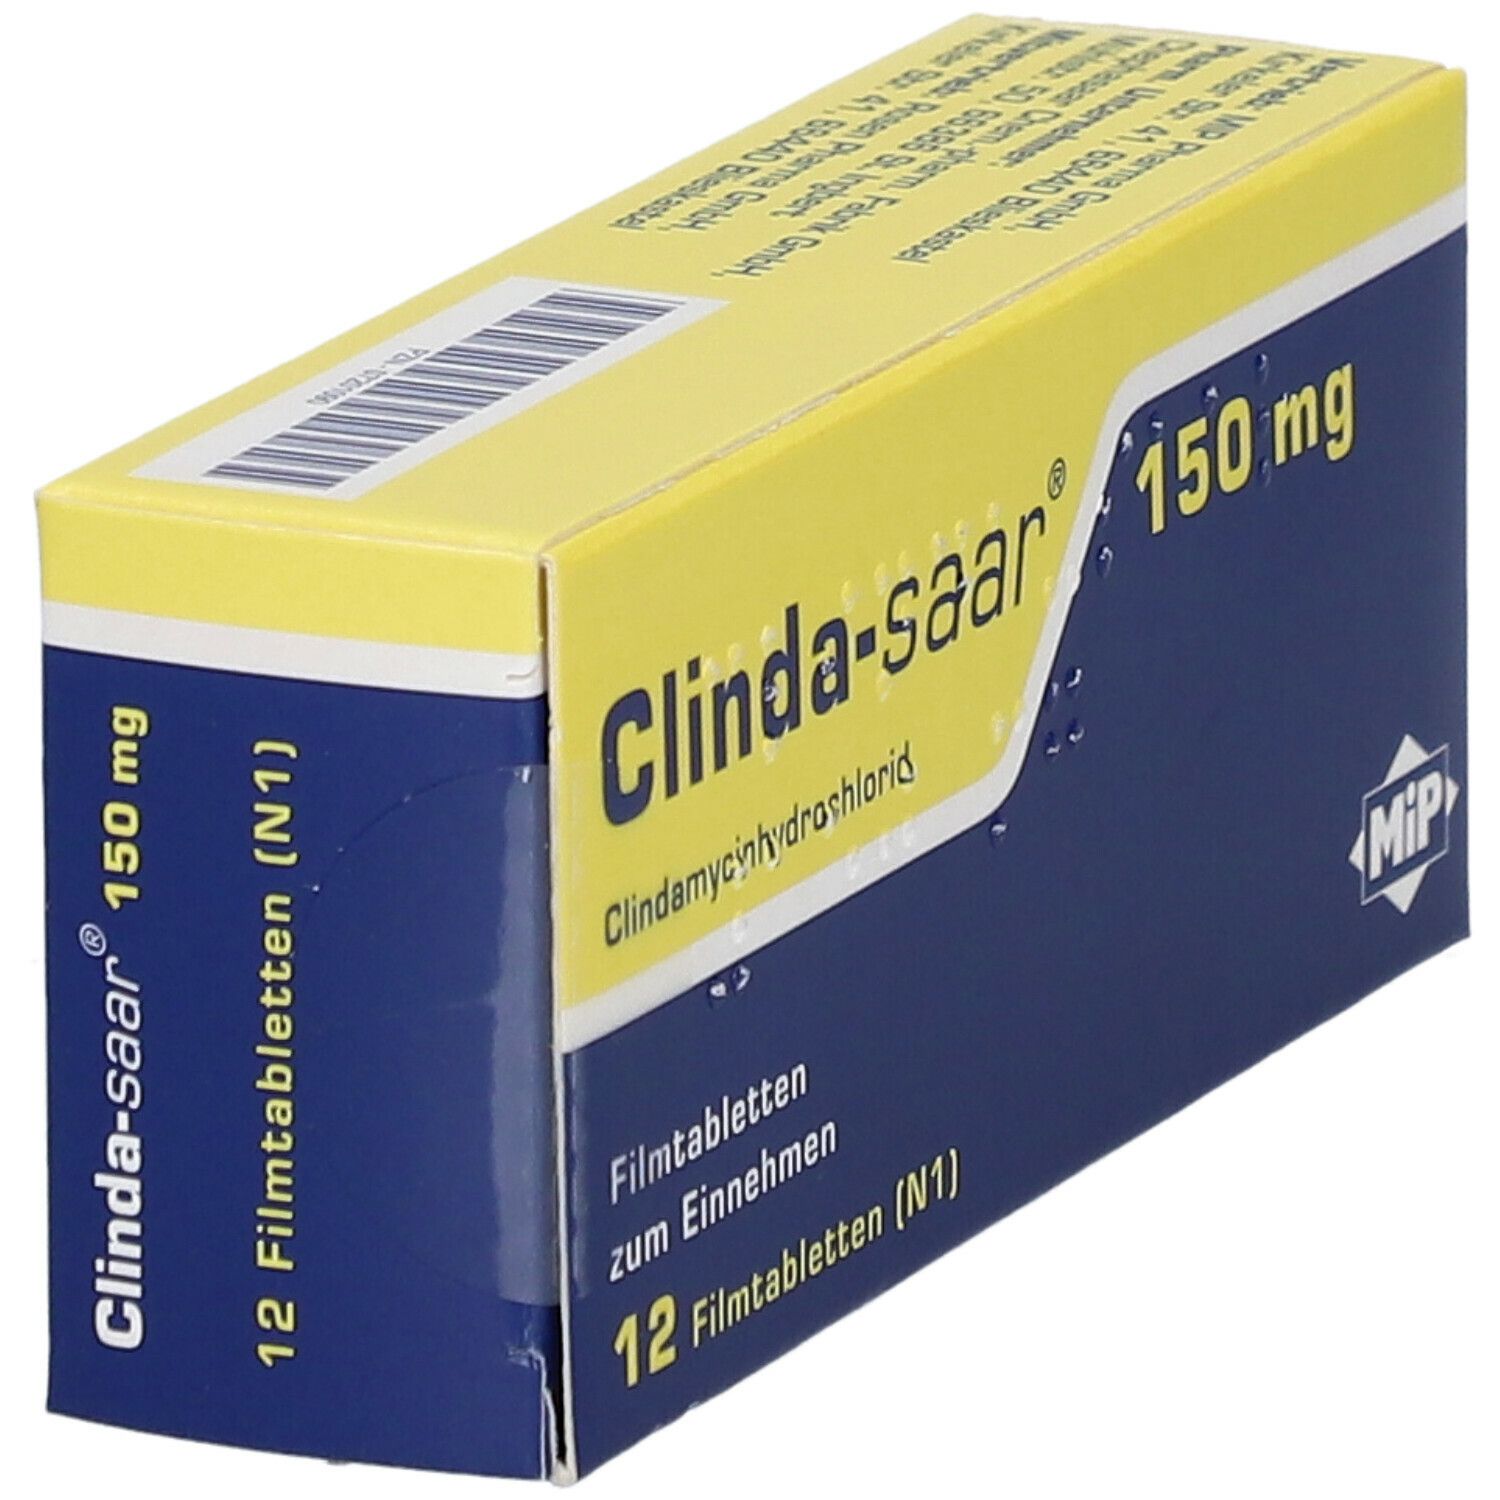 Clinda-saar® 150 mg